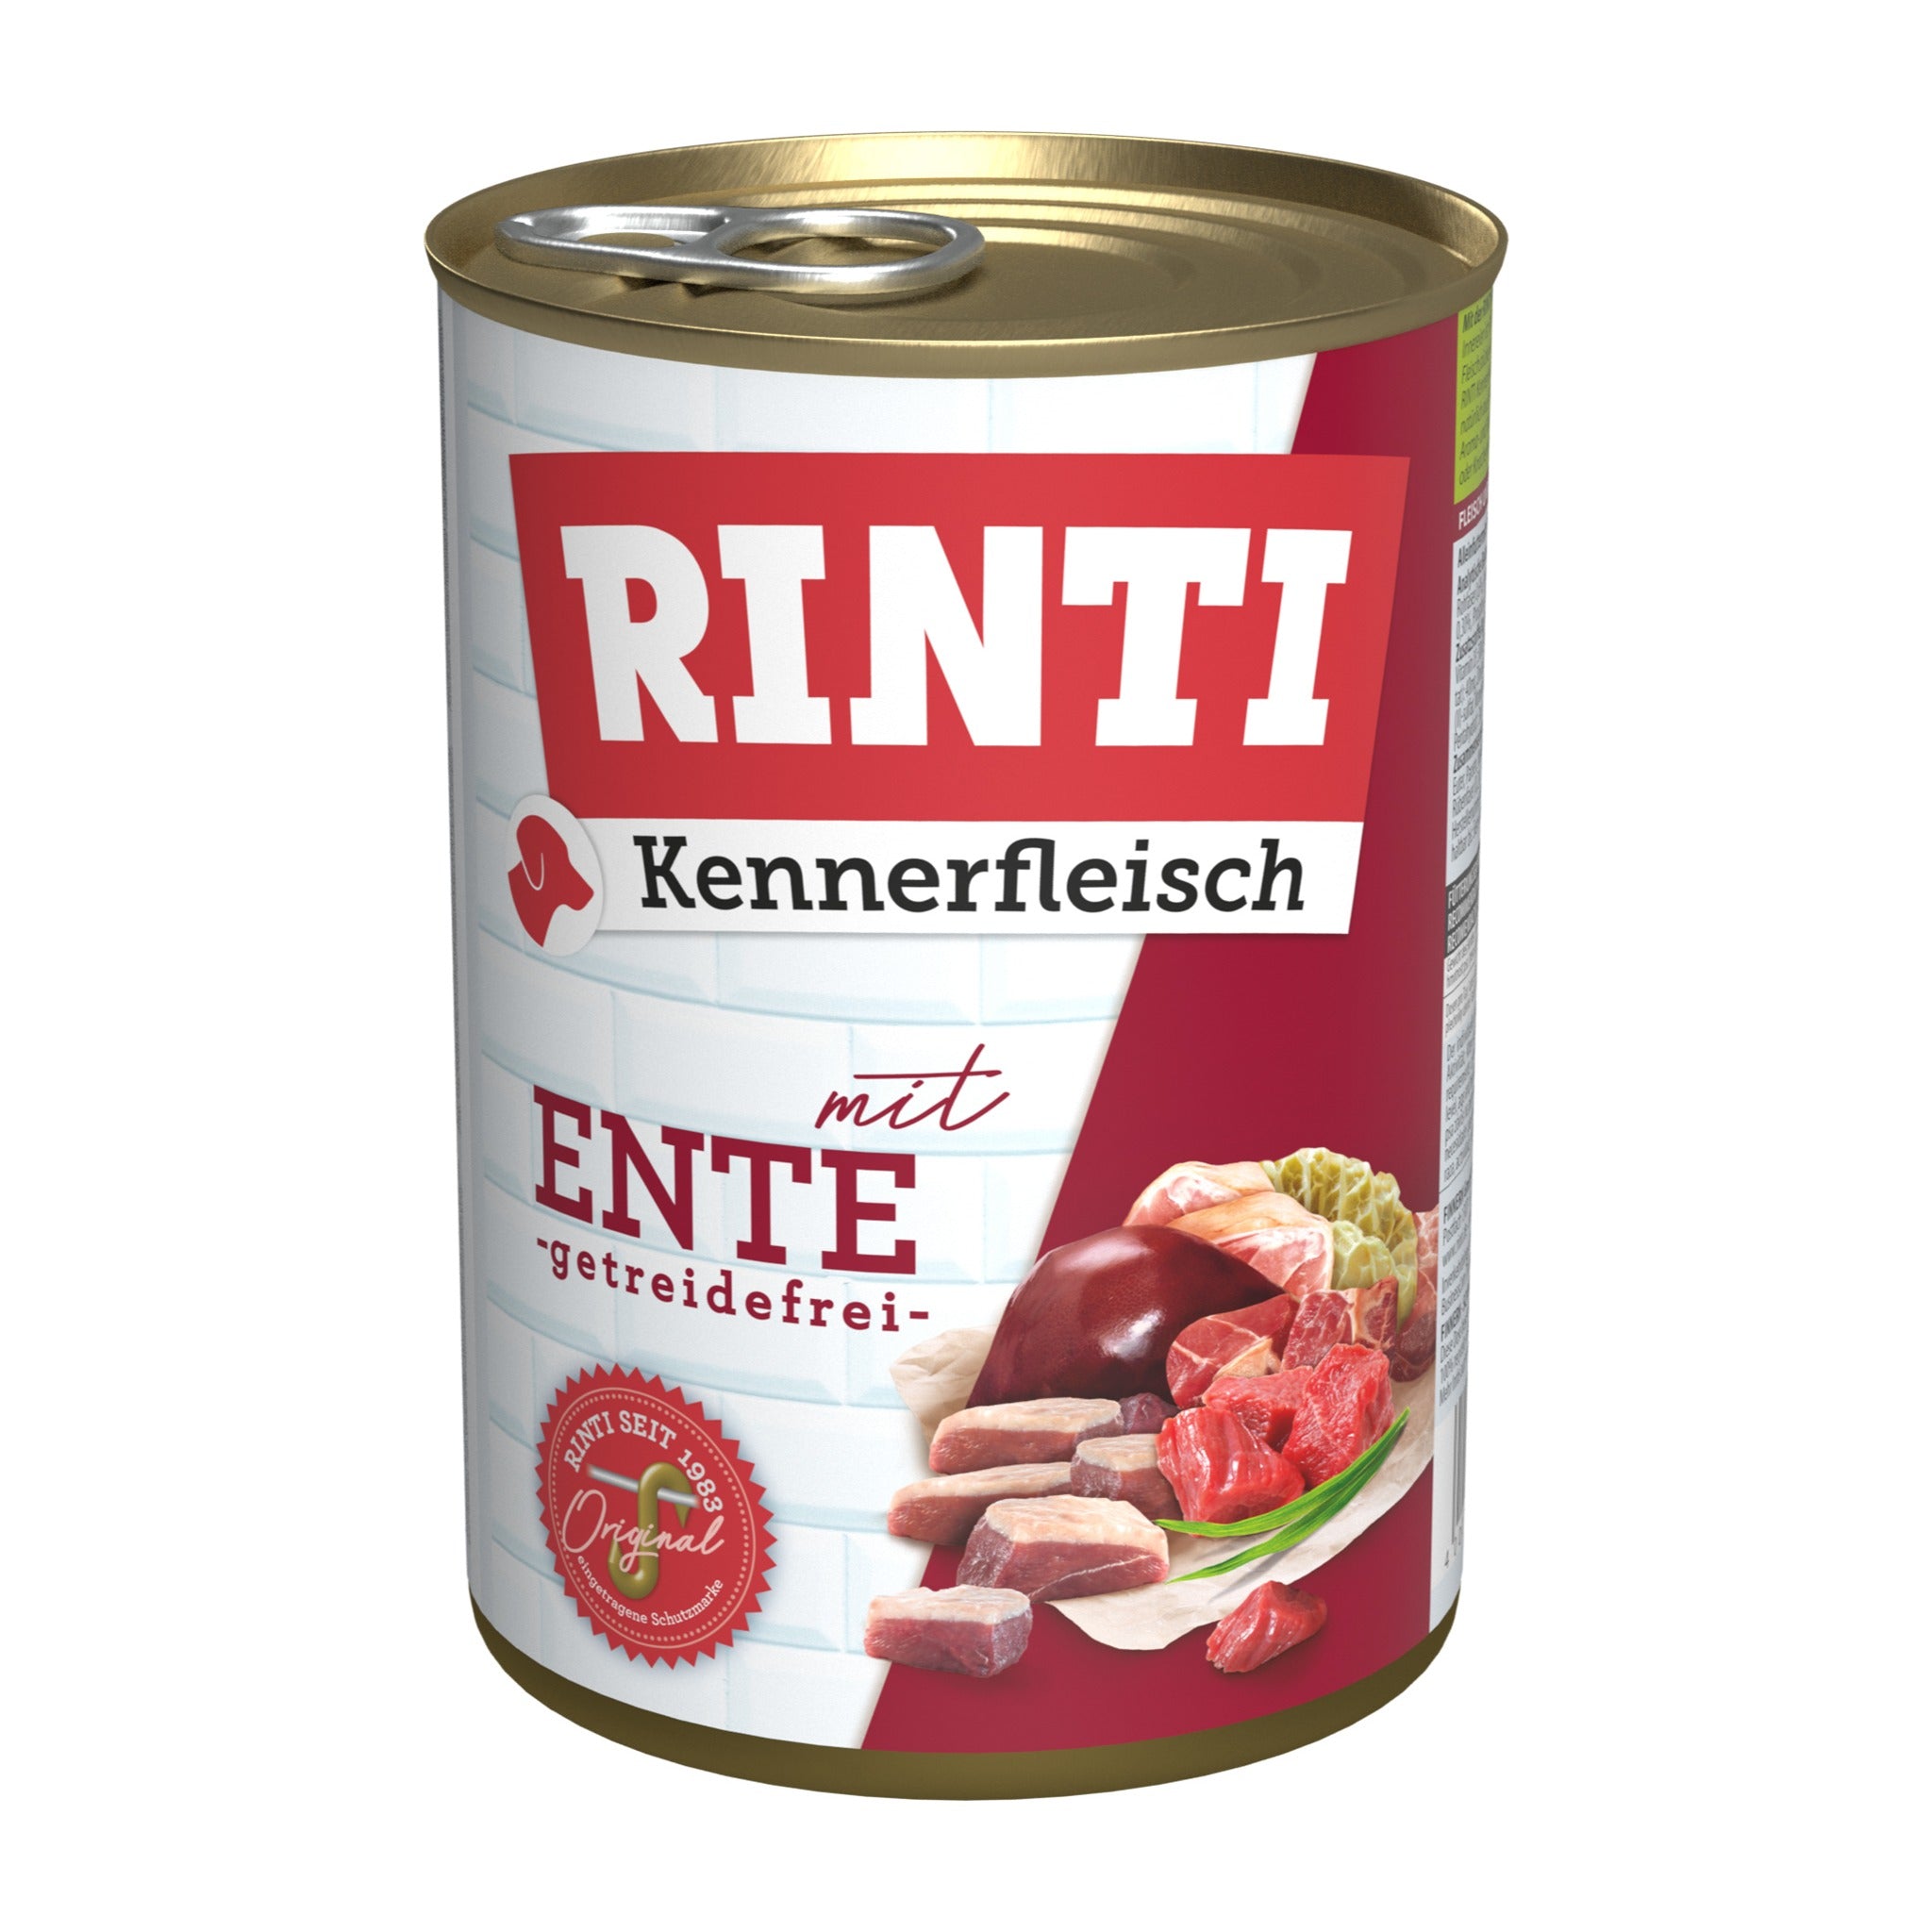 RINTI Dose, Kennerfleisch mit Ente - Woofshack